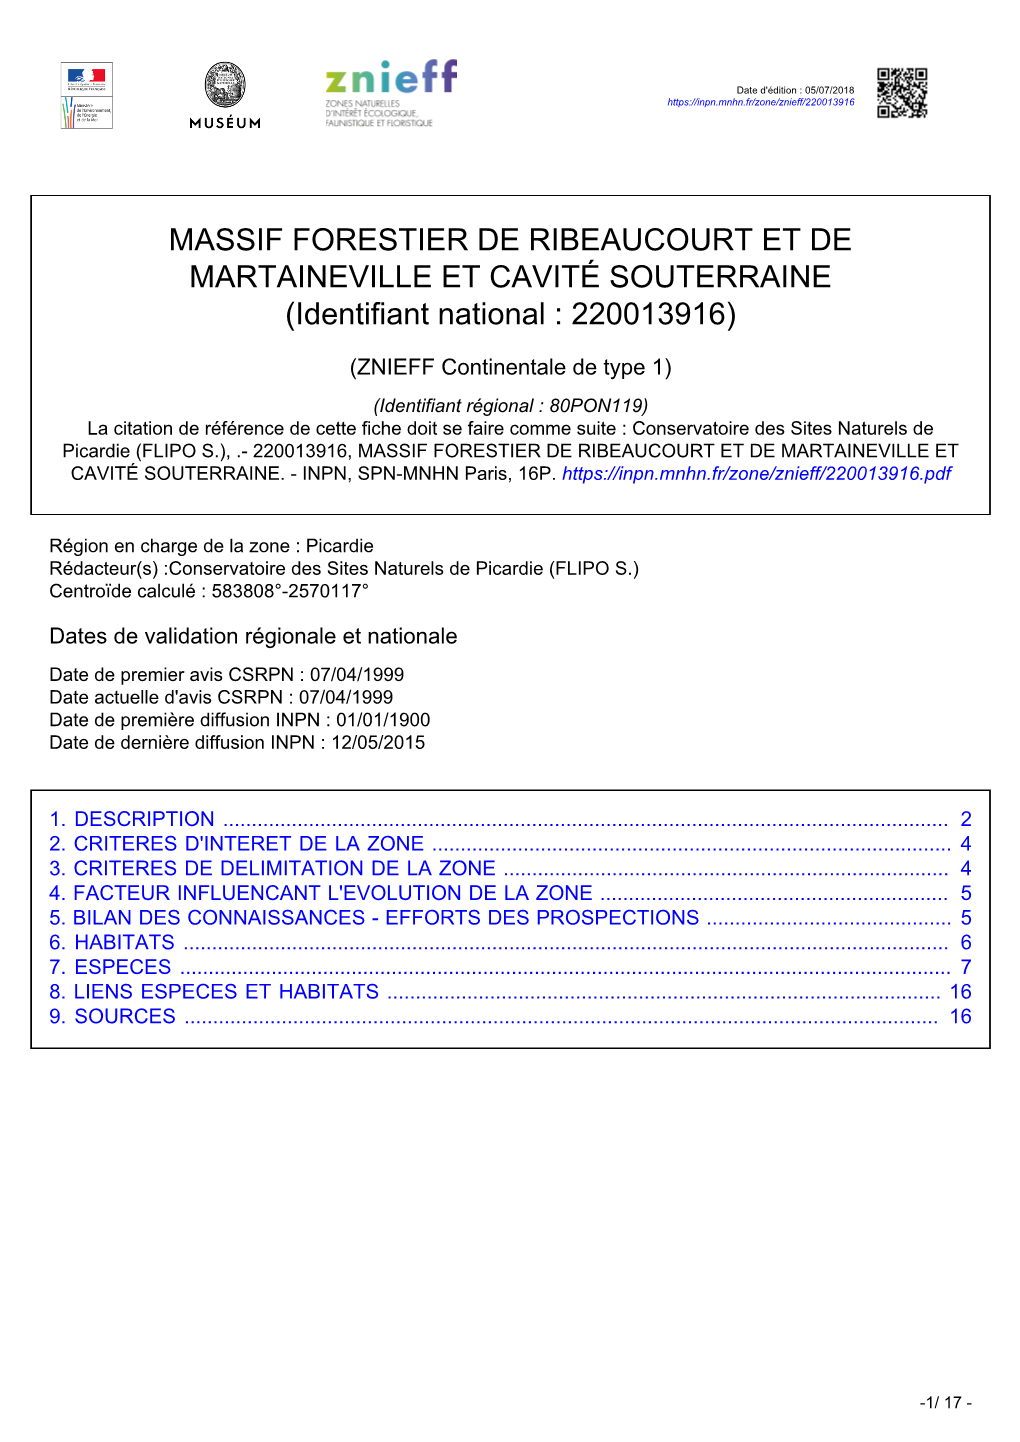 MASSIF FORESTIER DE RIBEAUCOURT ET DE MARTAINEVILLE ET CAVITÉ SOUTERRAINE (Identifiant National : 220013916)